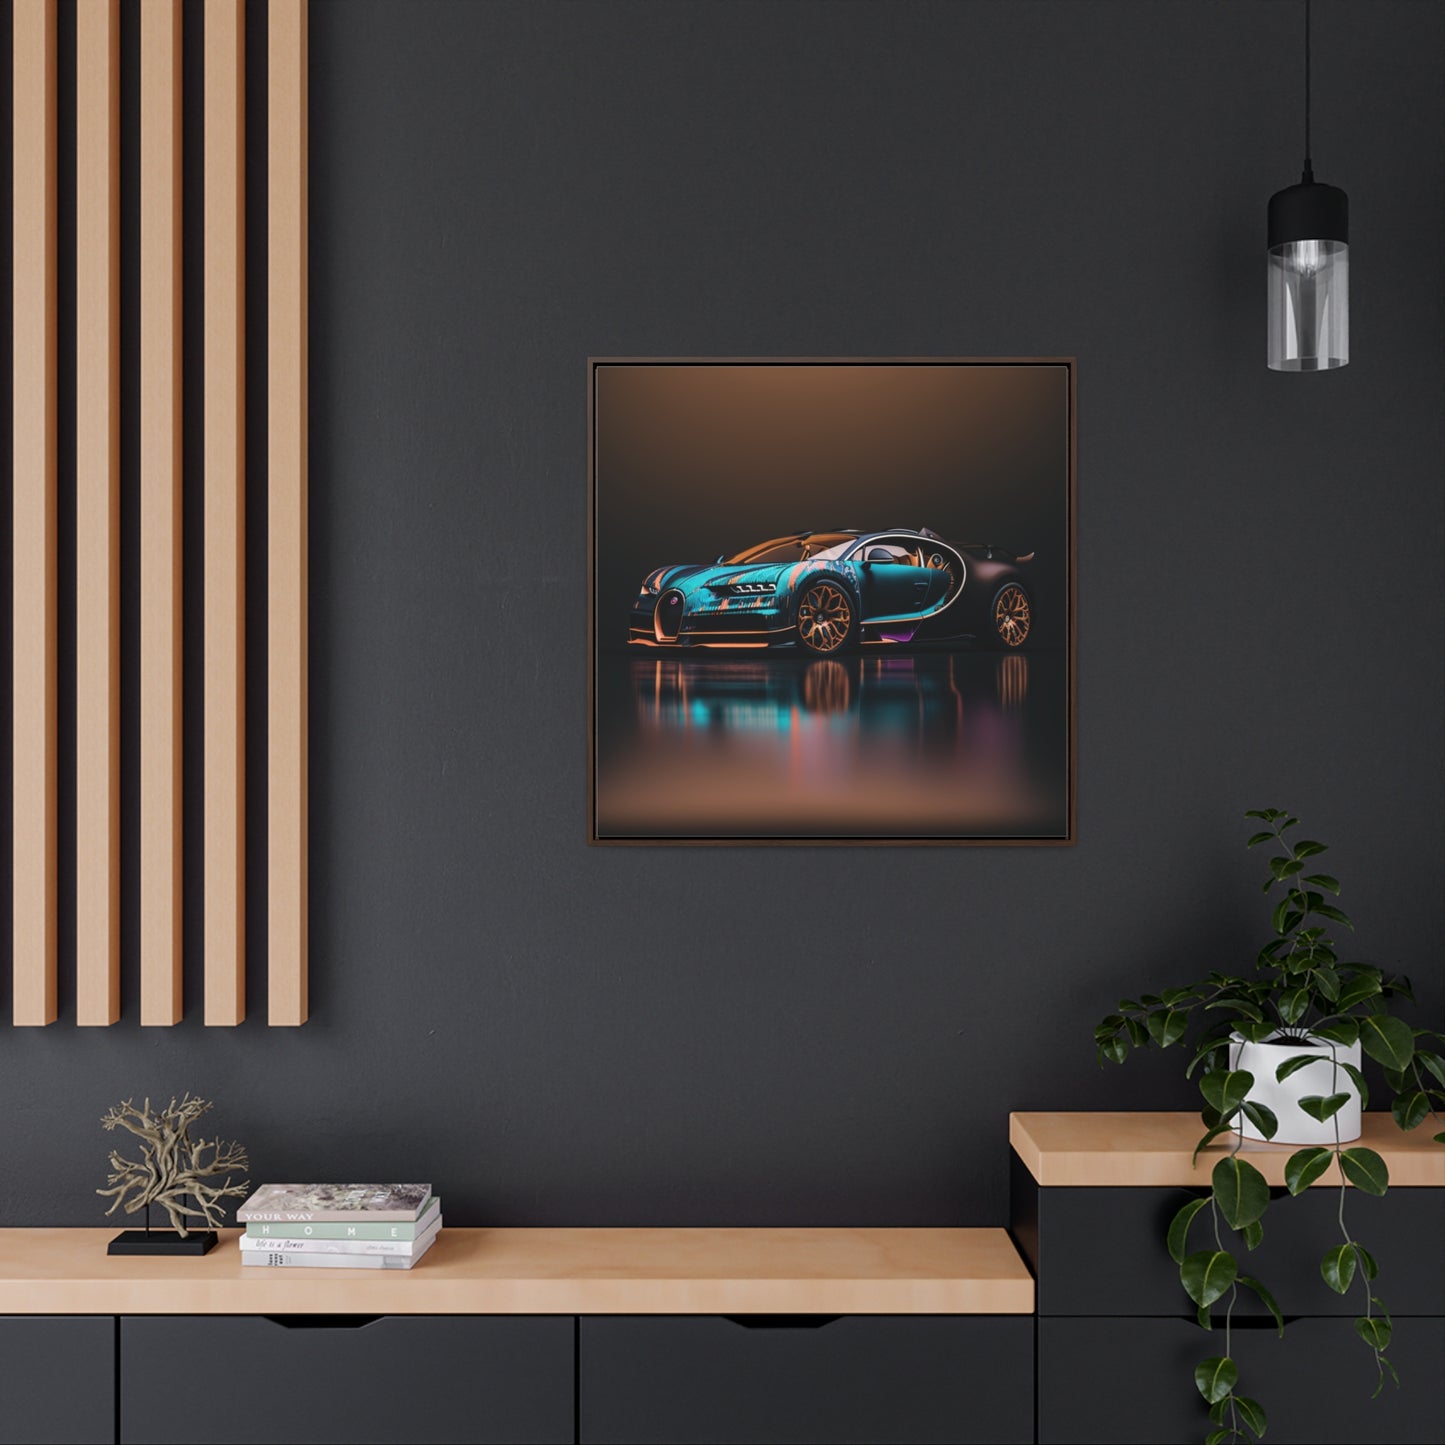 Gallery Canvas Wraps, Square Frame Bugatti Blue 2